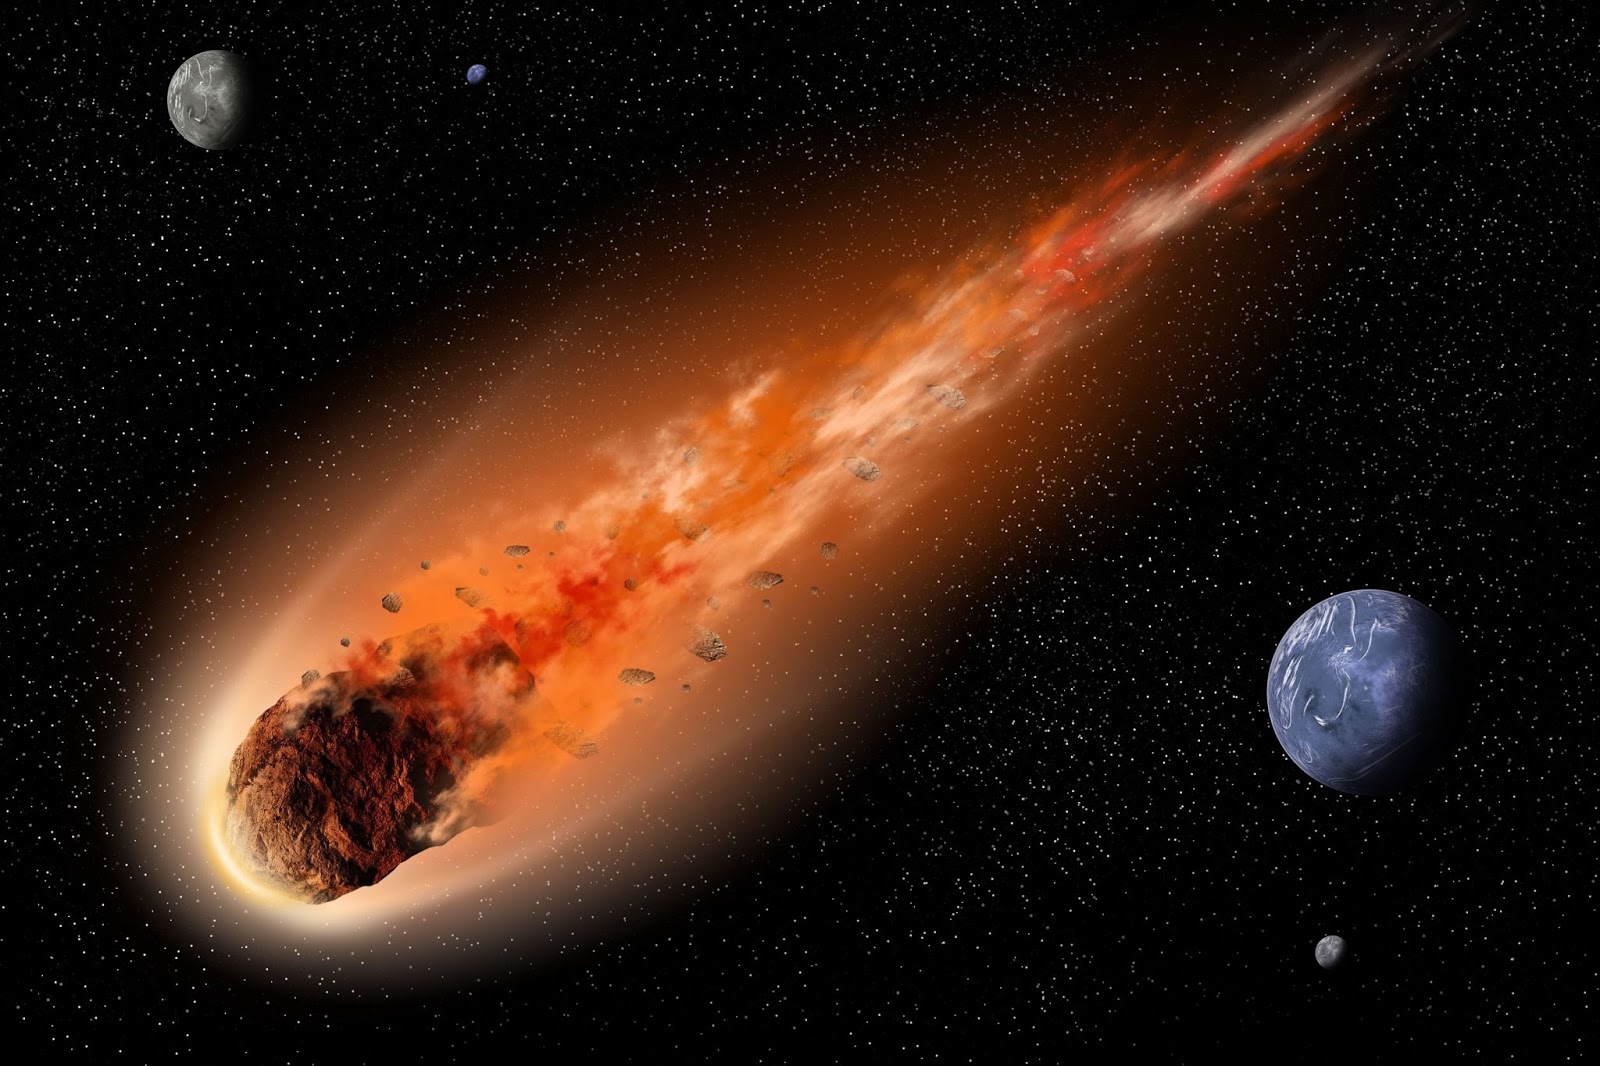  Komet  Dengan Diameter 1 Km Meteor